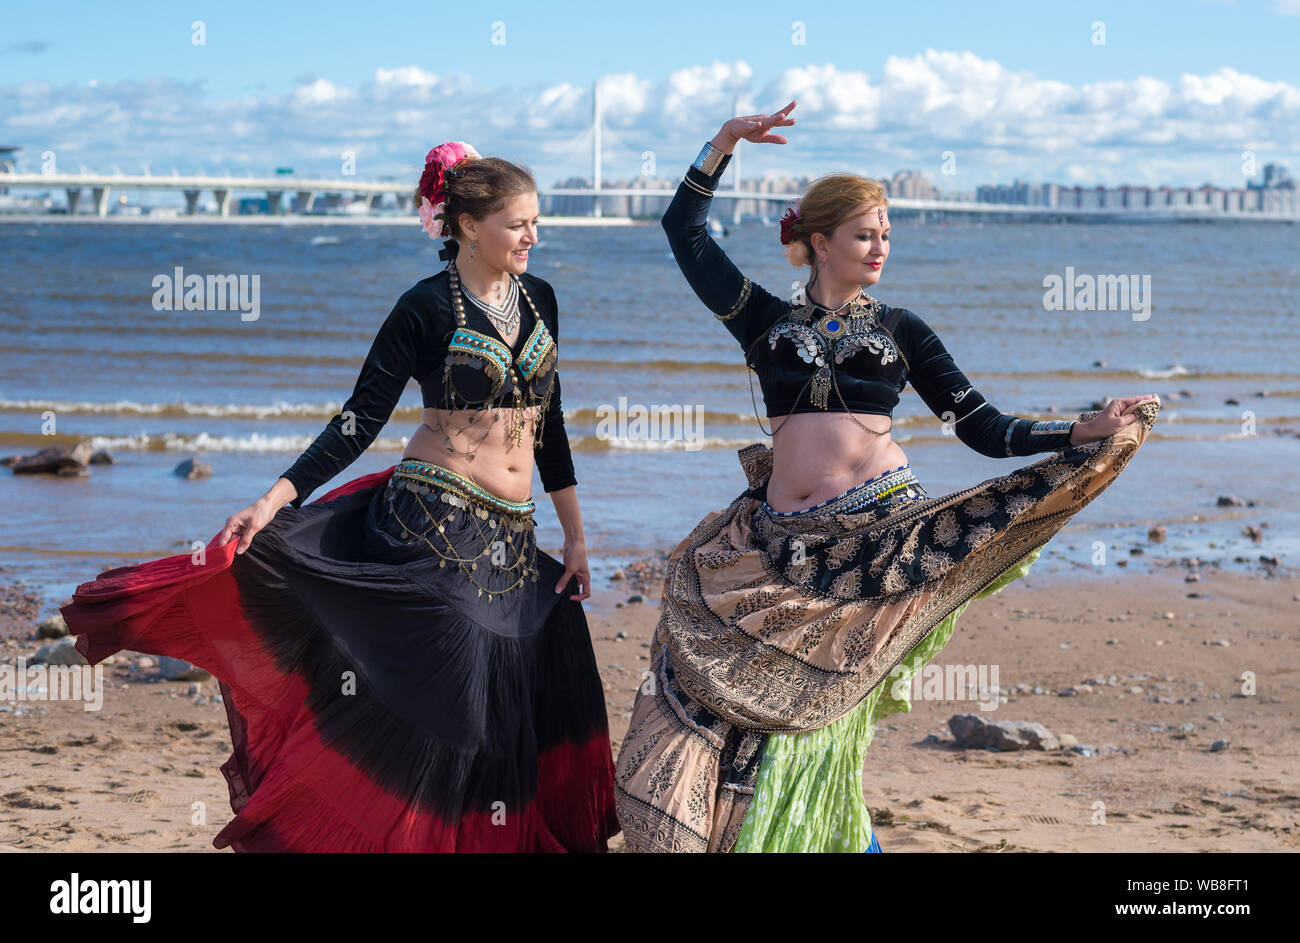 St. Petersburg, Russland. 24. August 2019: Tänzerinnen in orientalischen Kostümen am Ufer. Stockfoto